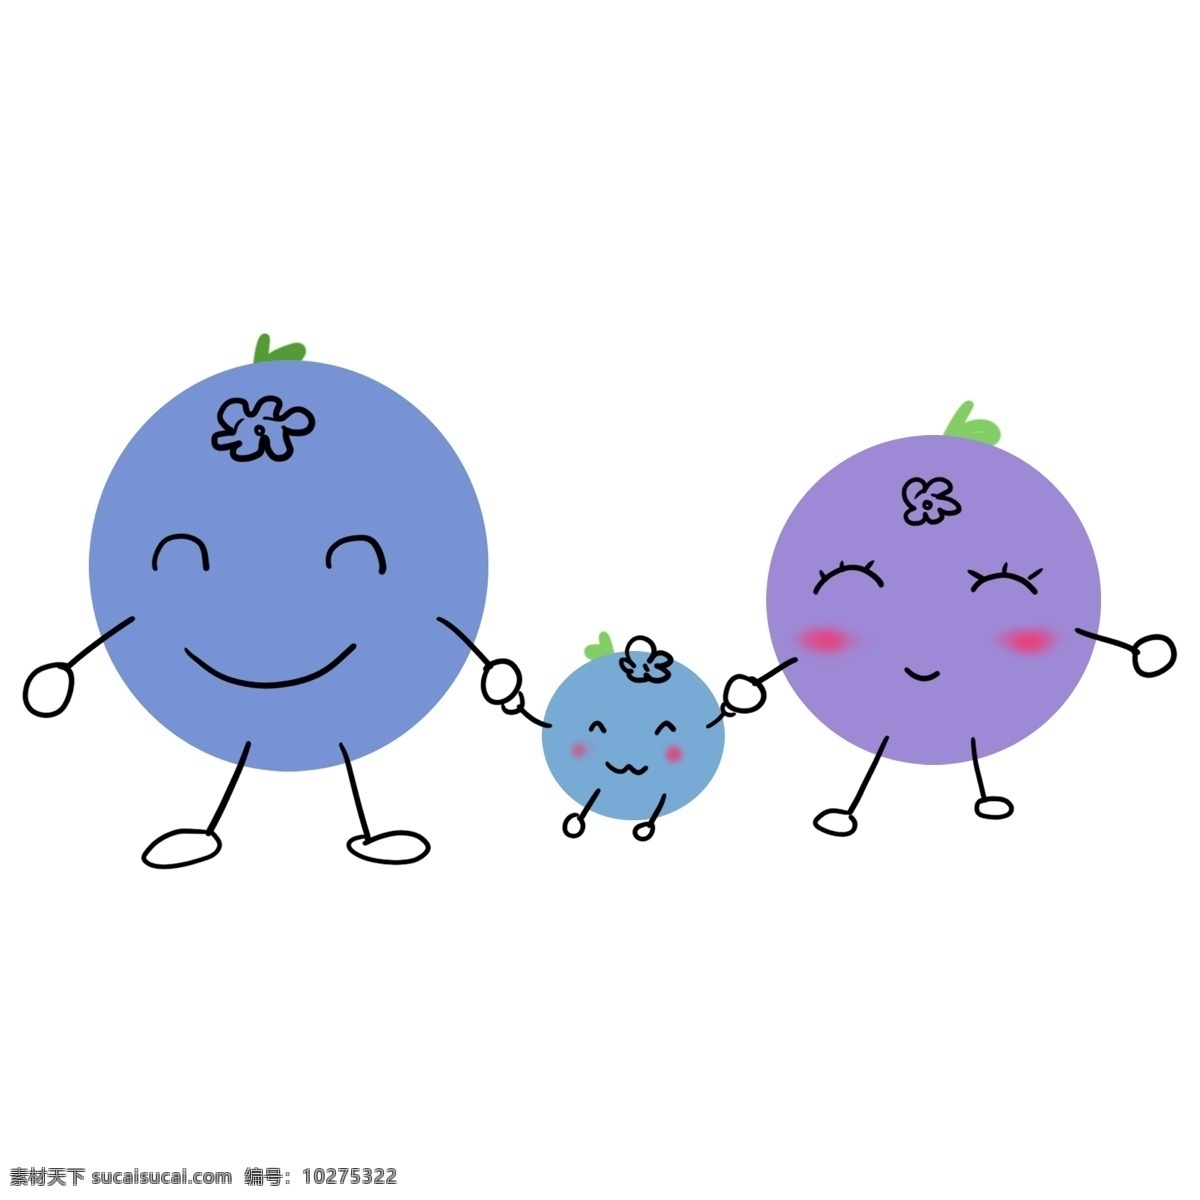 一家 三口 萌 翻 可爱 蓝莓 扁平 萌翻 叶绿素 两个 香甜 酸酸的 装饰 贴画 免扣 文件